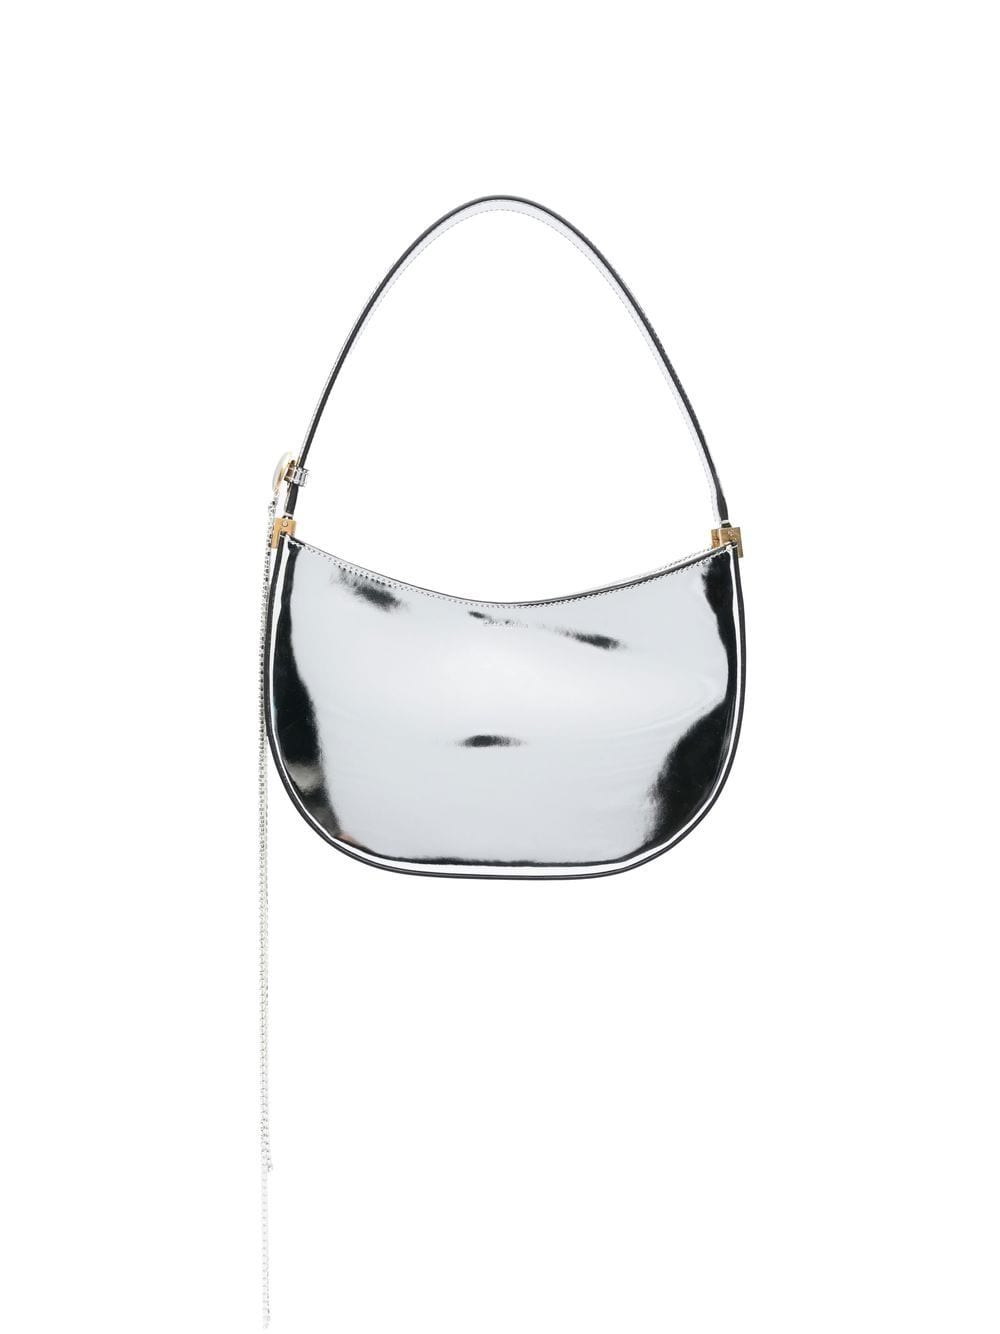 Magda Butrym mirrored metallic-finish shoulder bag - Silver von Magda Butrym